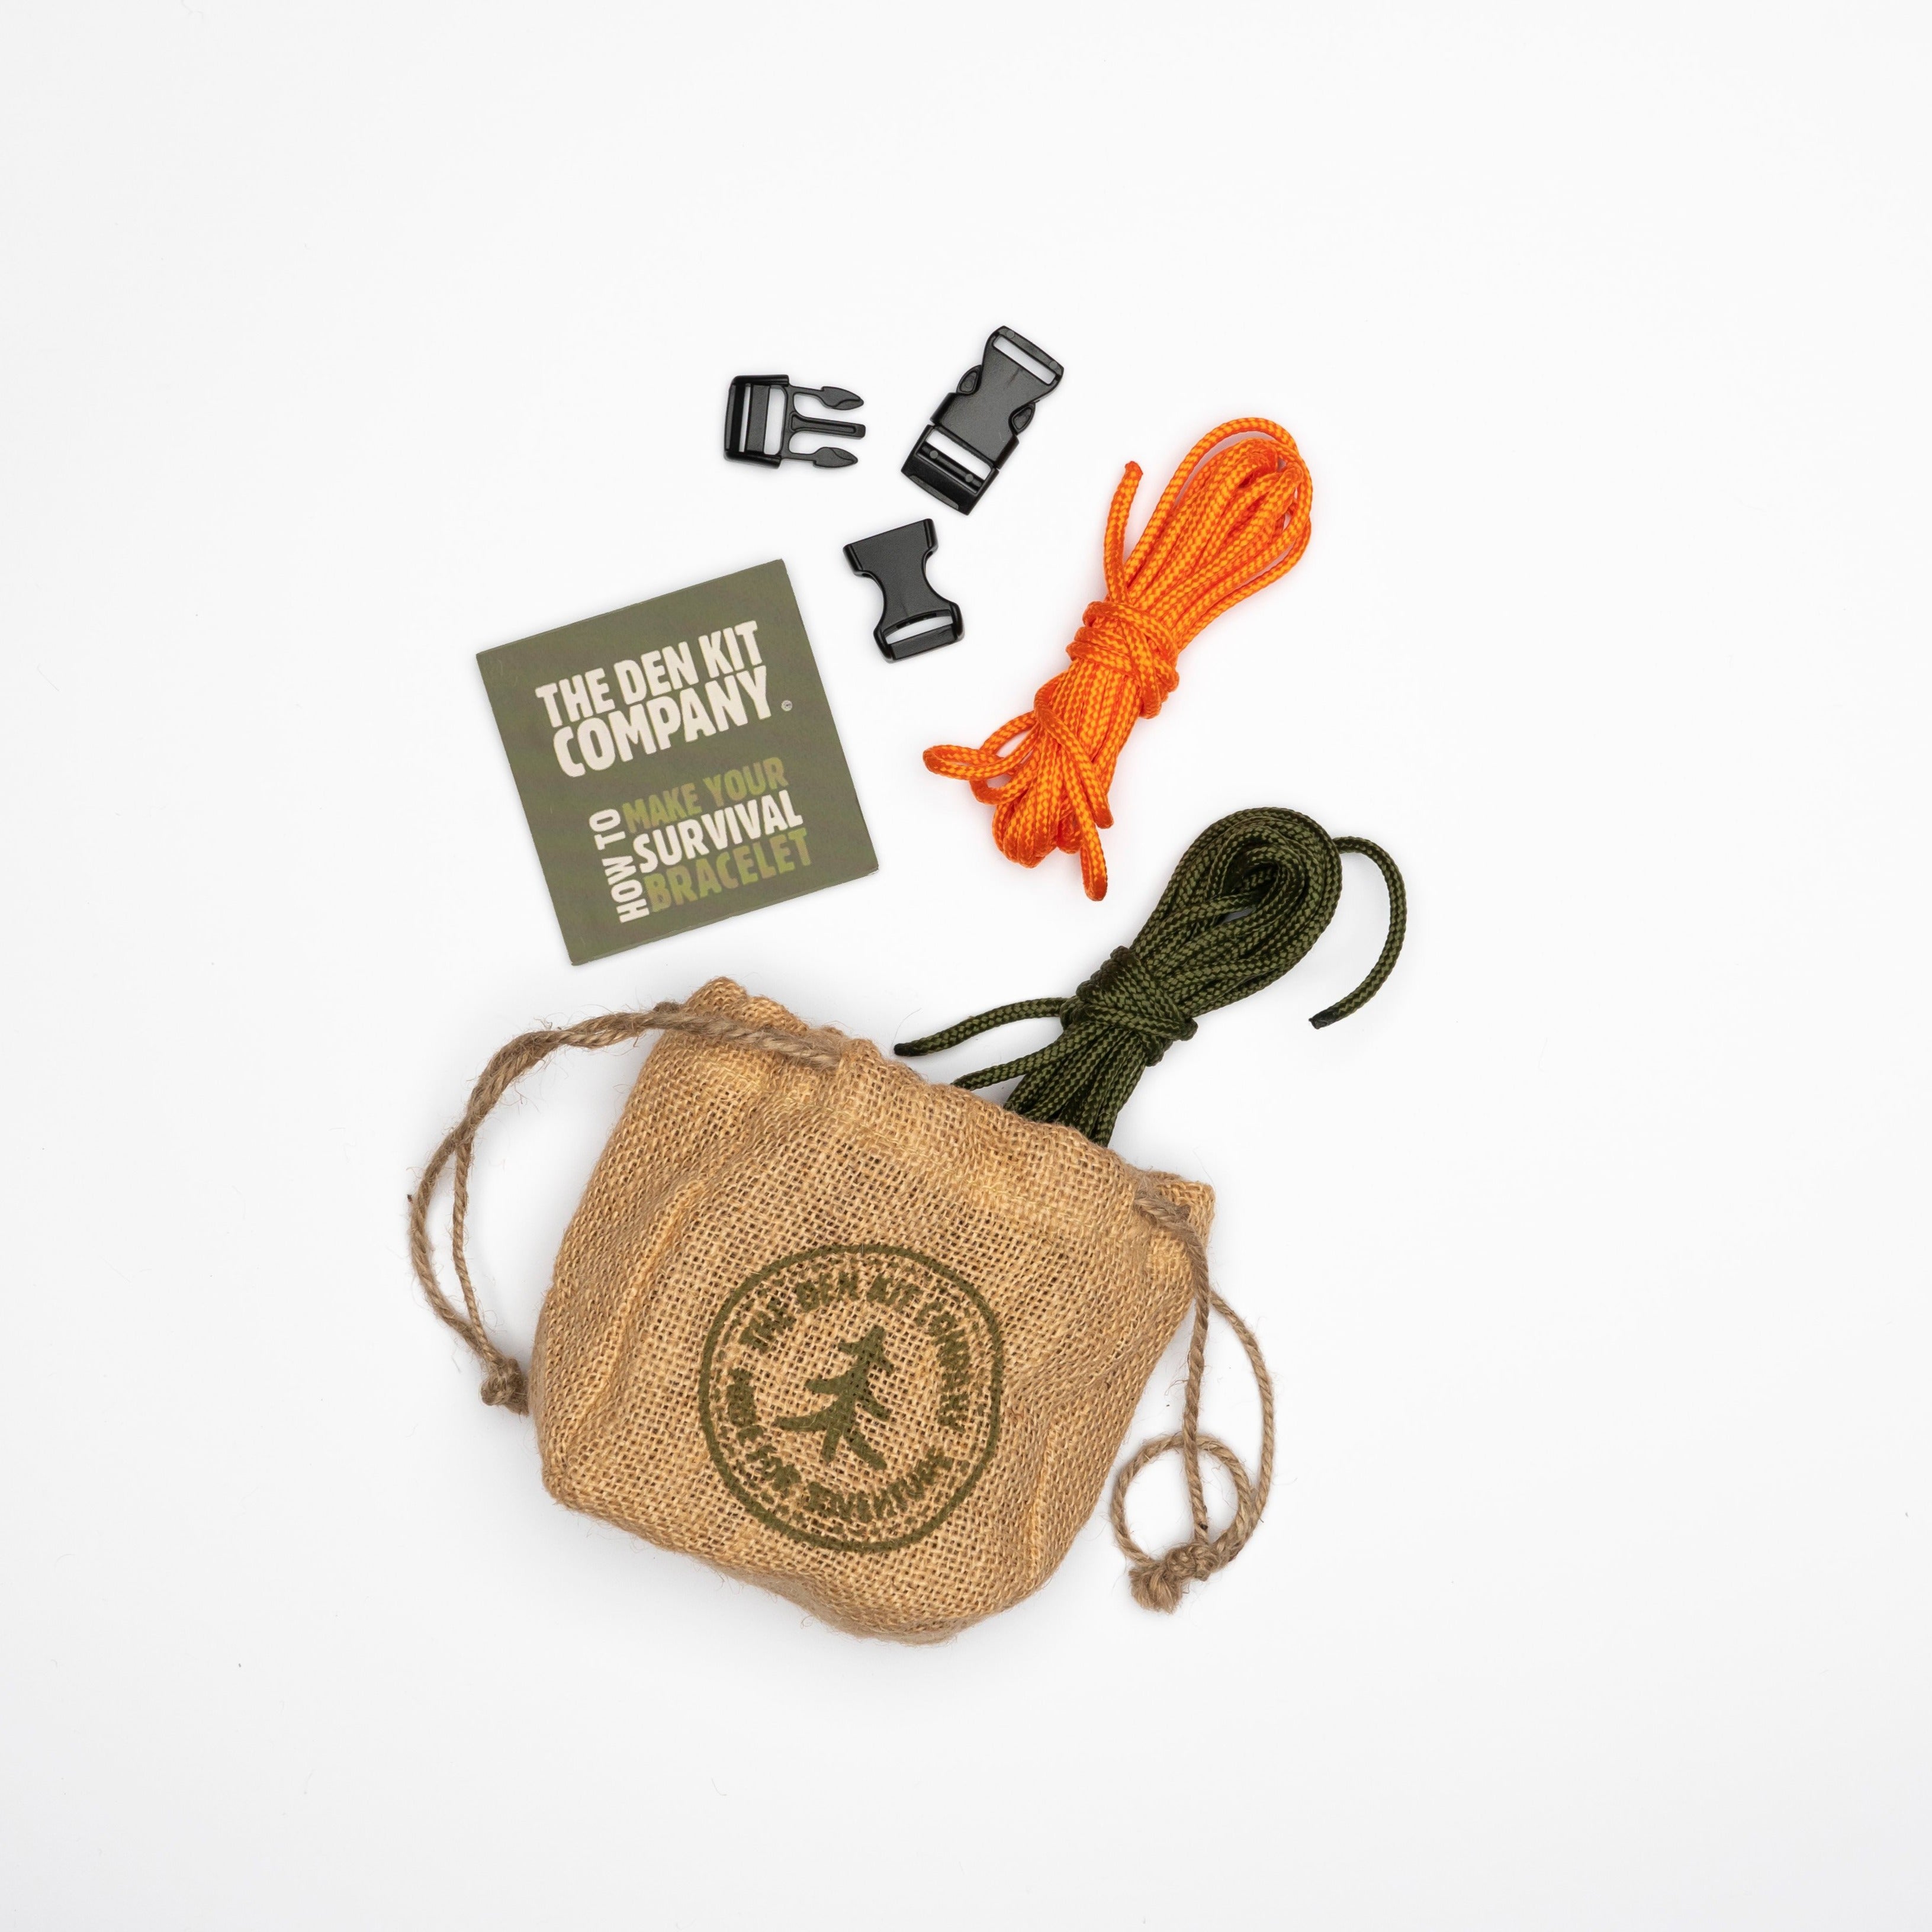 Kodiak Survival Paracord Bracelet